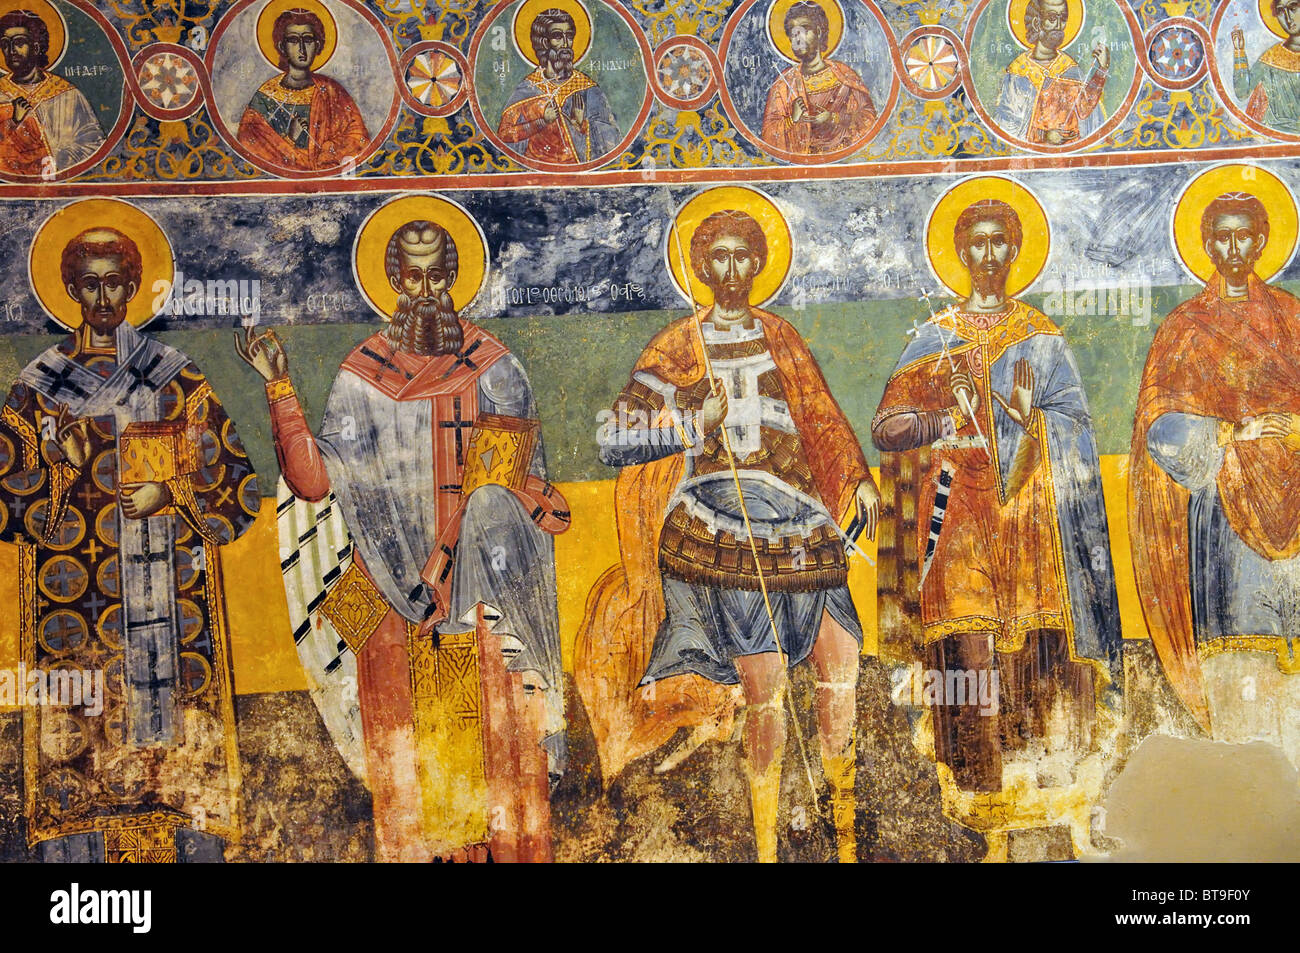 De fresques du monastère de Sant'Andrea, Musée byzantin, la place Solomos, la ville de Zakynthos, Zakynthos (Zante), îles Ioniennes, Grèce Banque D'Images